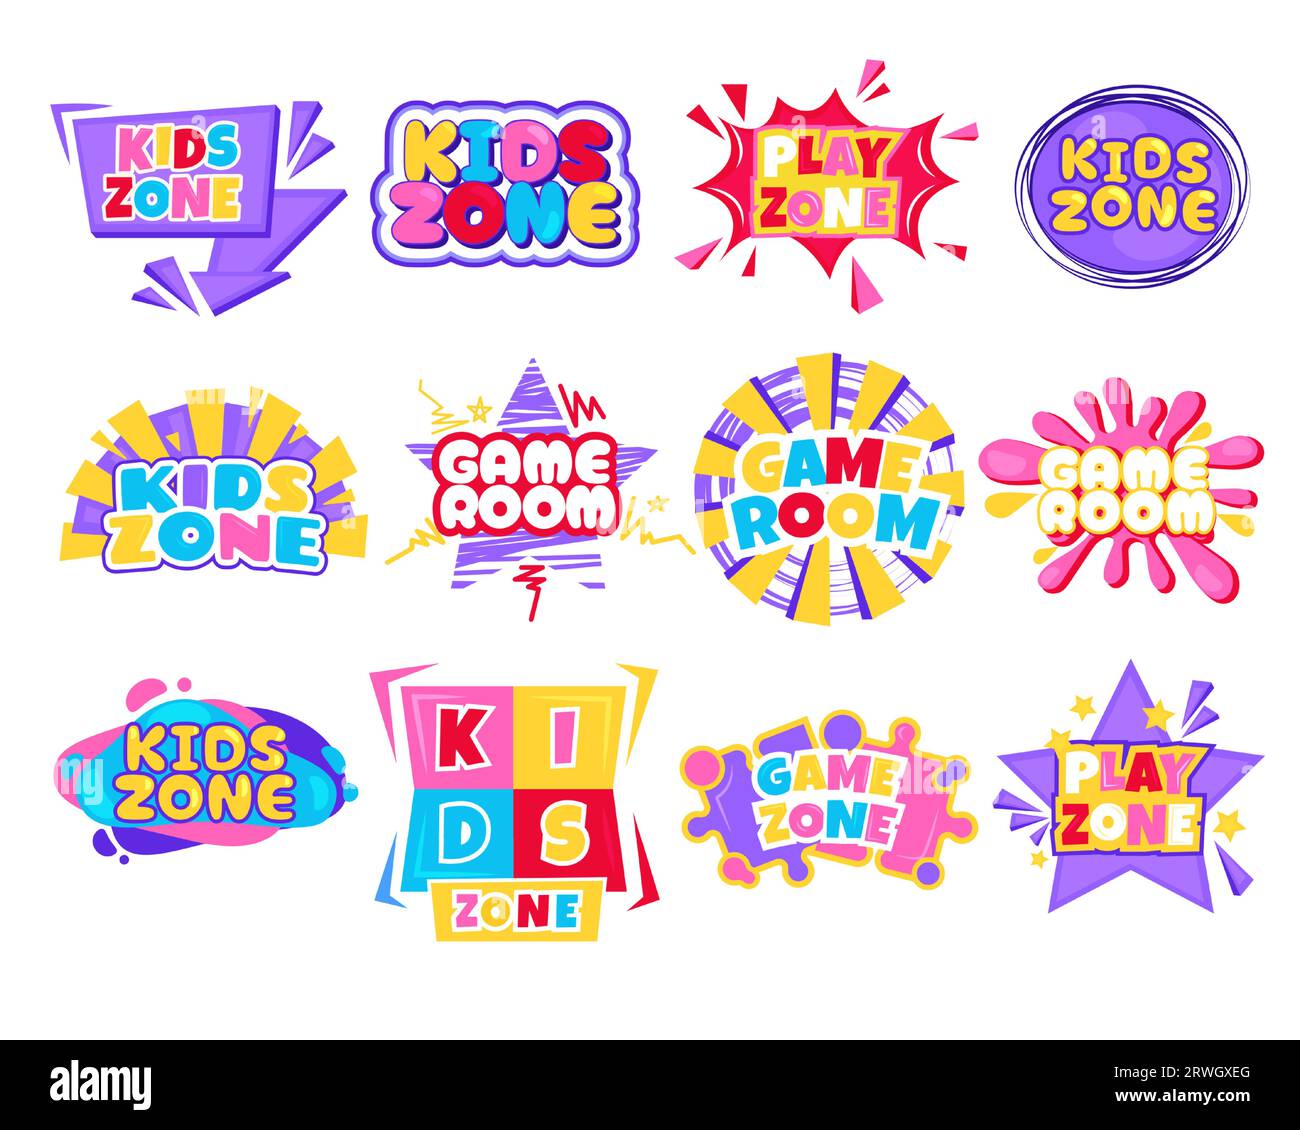 Spielzimmer-Kid-Logo. Farbenfroher Cartoon-Hintergrund mit kindlichem Spielzimmer, Kinderspielplatz und Aktivitätenelementen. Vektor-isoliertes Set Stock Vektor